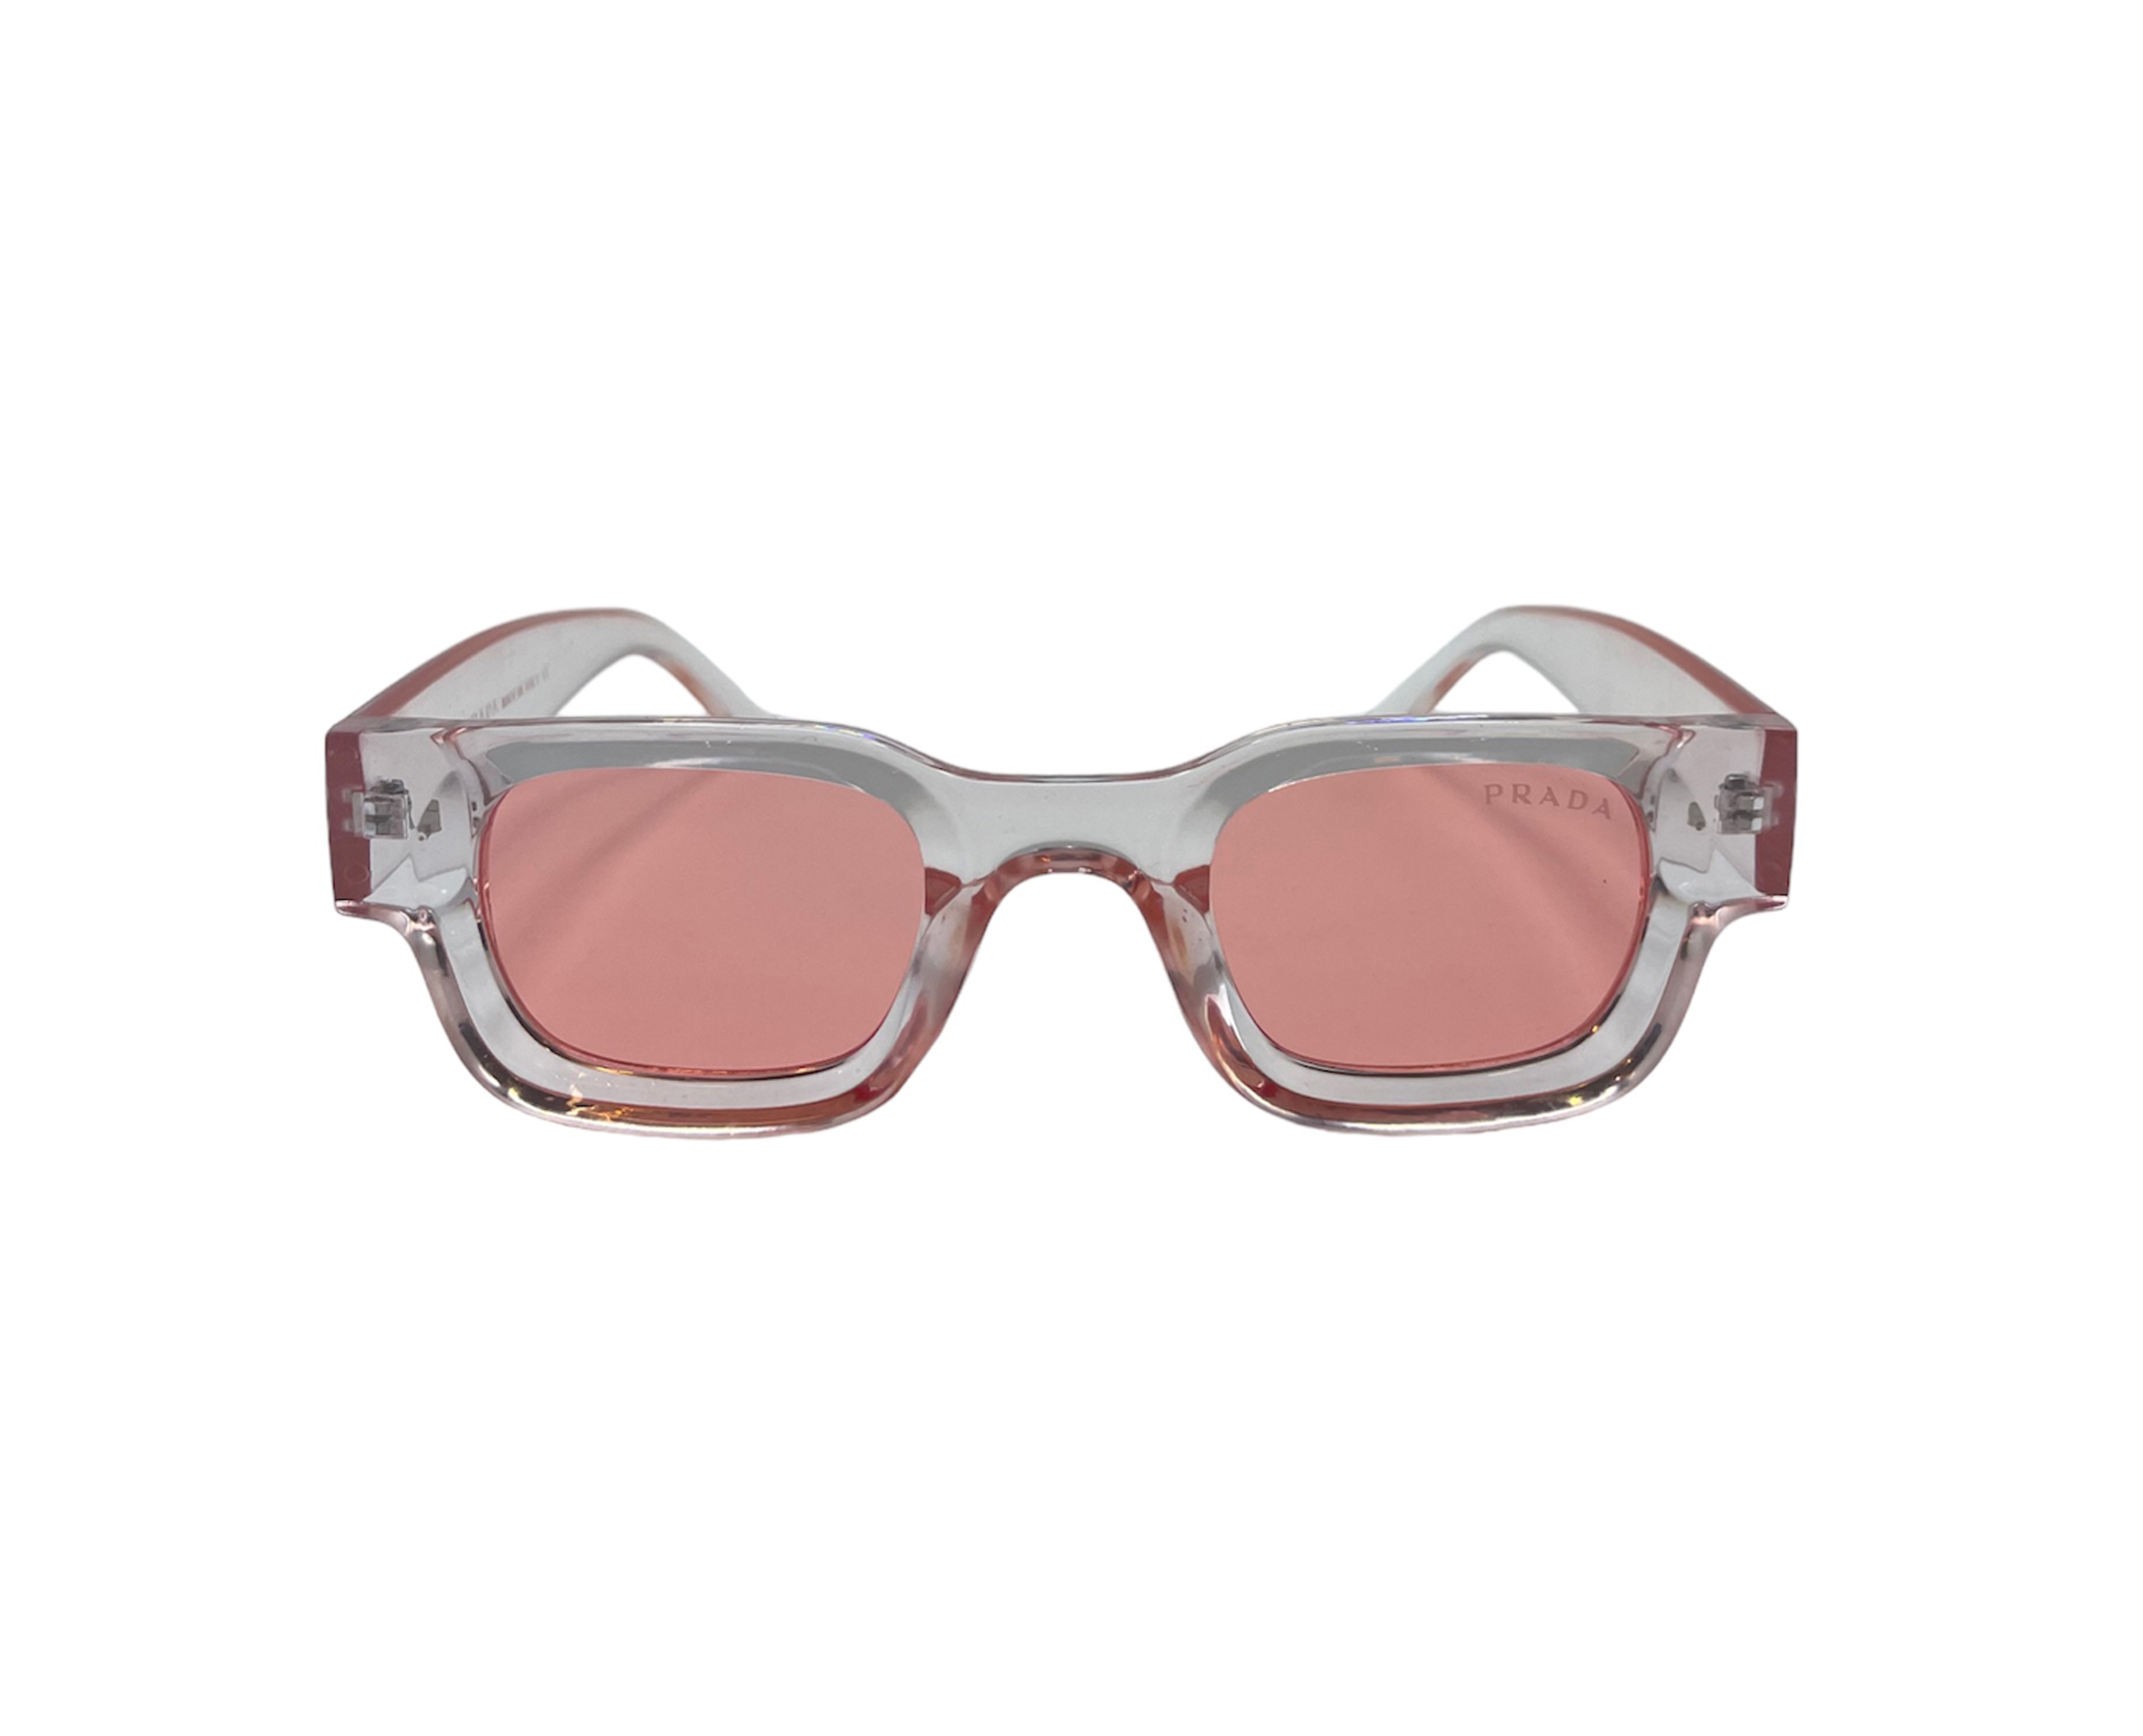 NS Classic - 7510 - Pink - Sunglasses